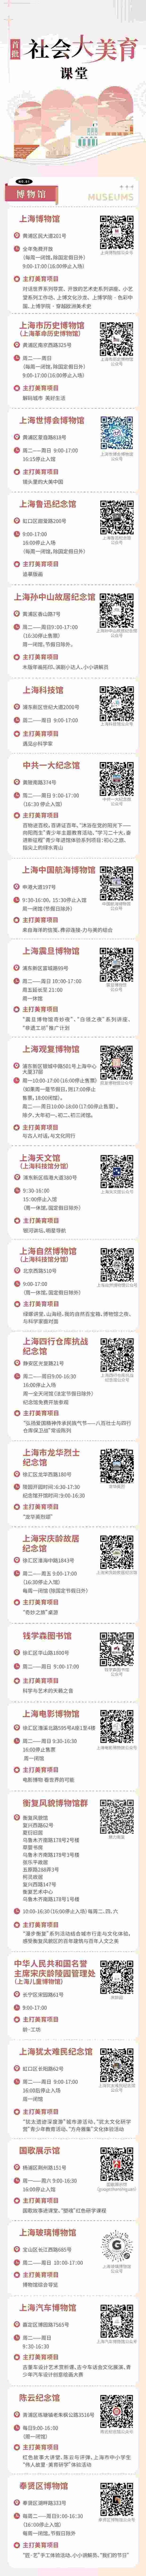 【圖説上海】滬上首批70個“社會大美育”課堂名單揭曉